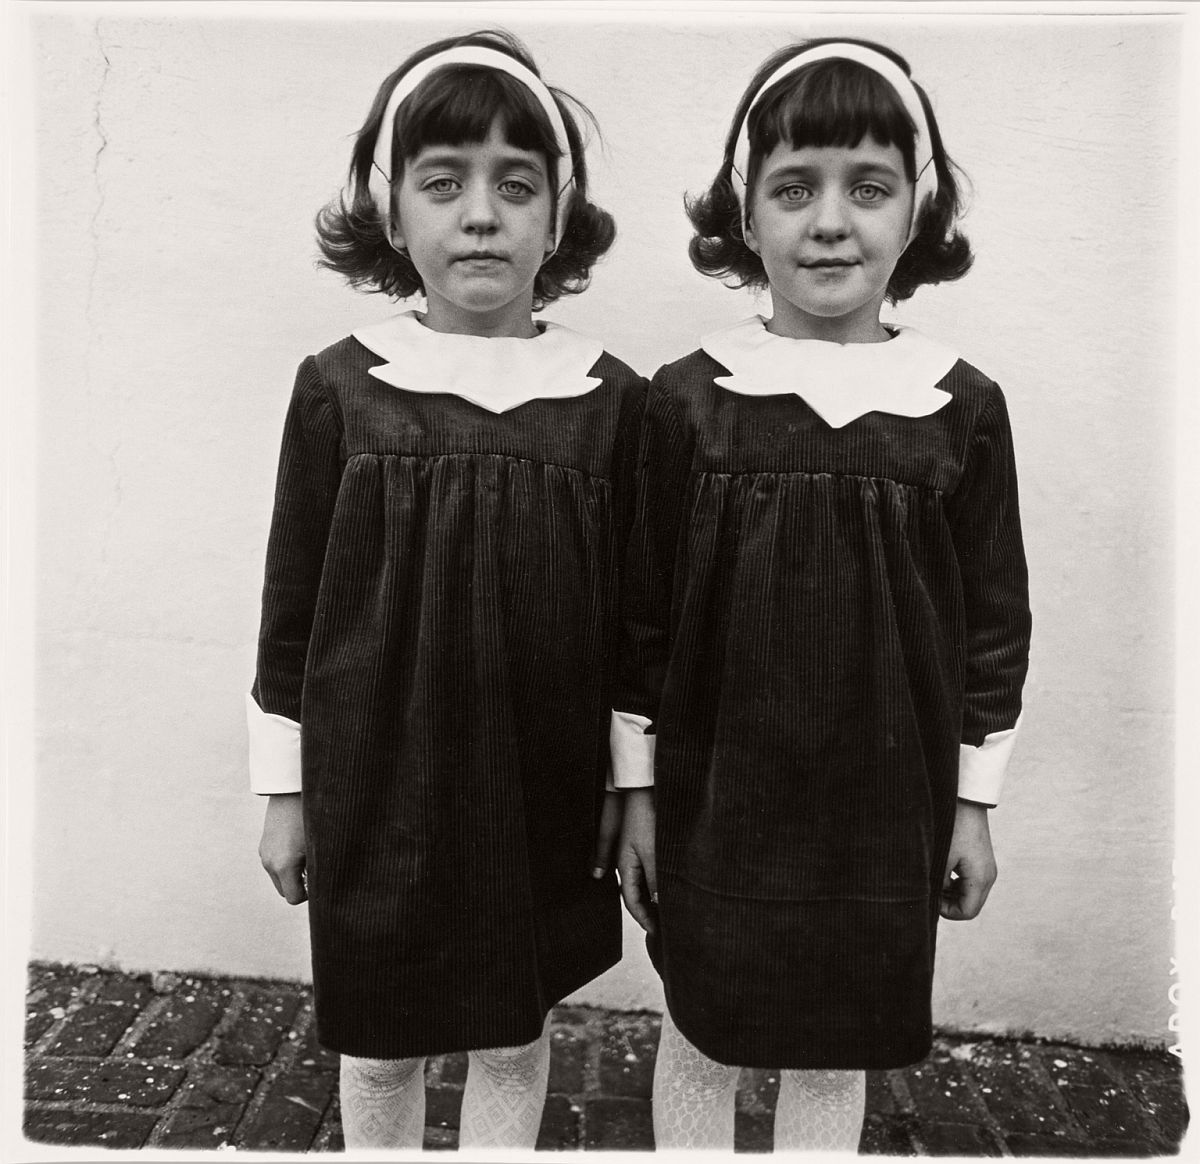 Entre las inspiraciones artísticas de EL RESPLANDOR, destaca el paralelismo entre la obra 'Identical Twins, Roselle, New Jersey, 1967' de Diane Arbus y las gemelas siniestras del Overlook, pese a que Kubrick estudió con la fotógrafa, muchos creen que el parecido es coincidencia.